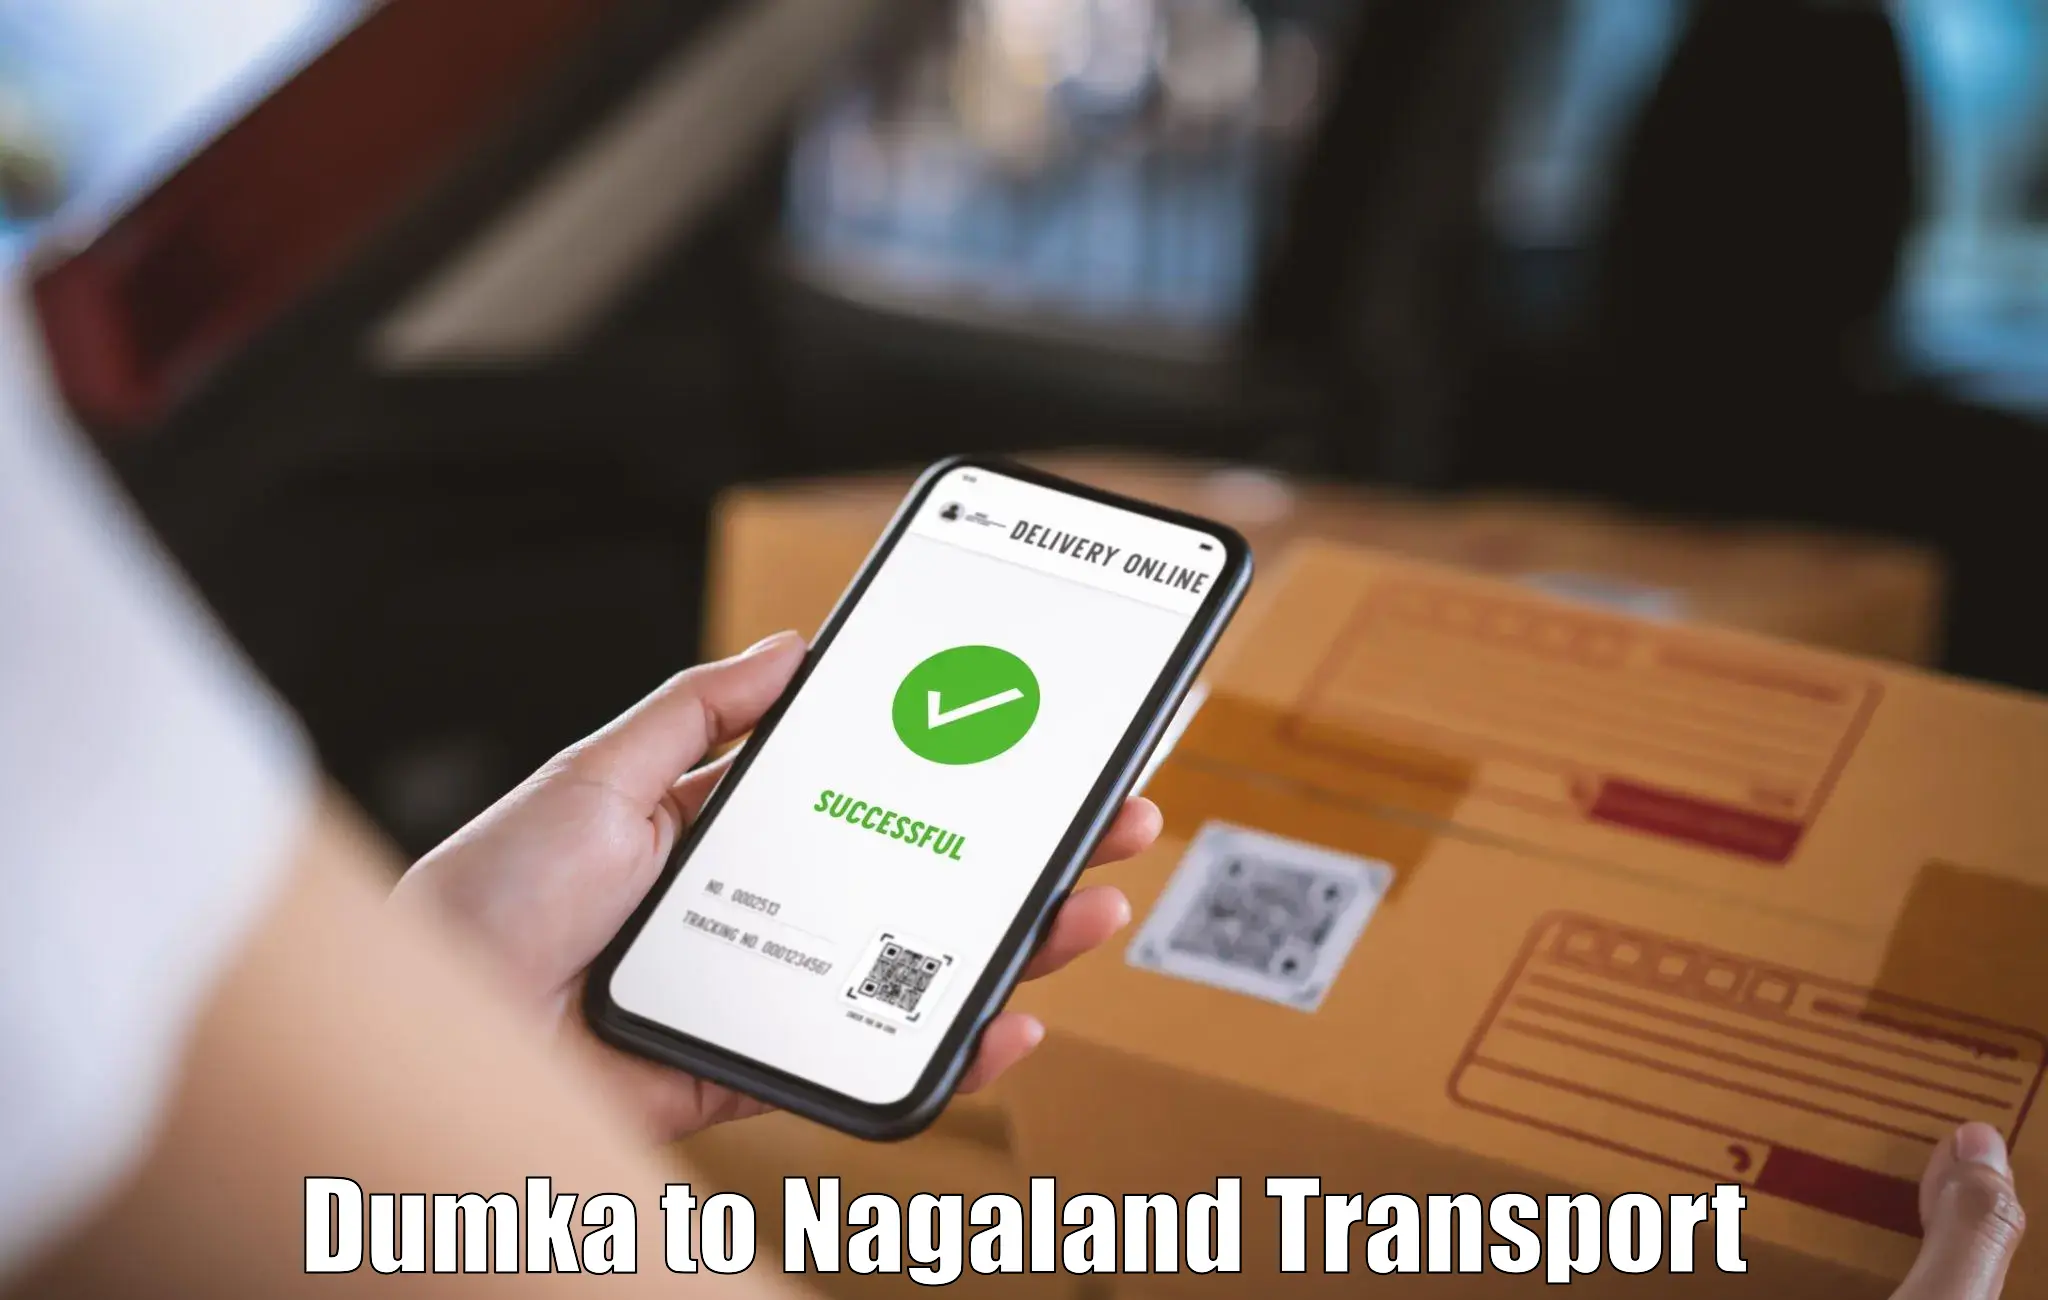 Daily transport service Dumka to Nagaland